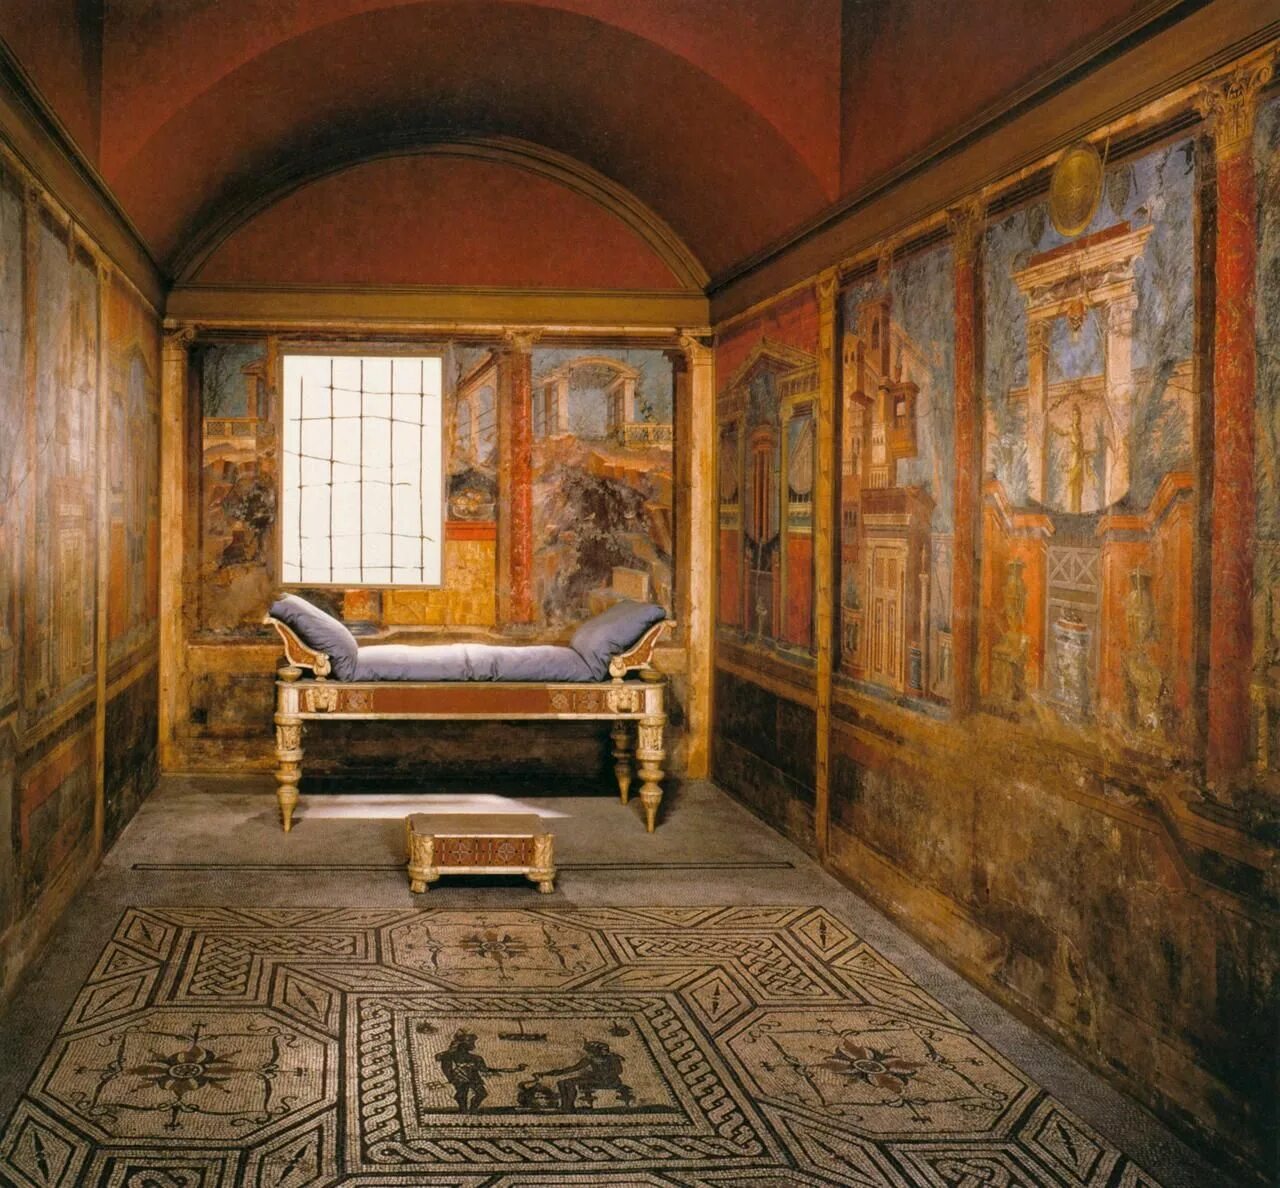 Стиль древности. Вилла в Боскореале древний Рим. Вилла Боскореале фрески. Философ фреска вилла в Боскореале 1 век. Вилла в Боскореале фрески 3 помпейский стиль.